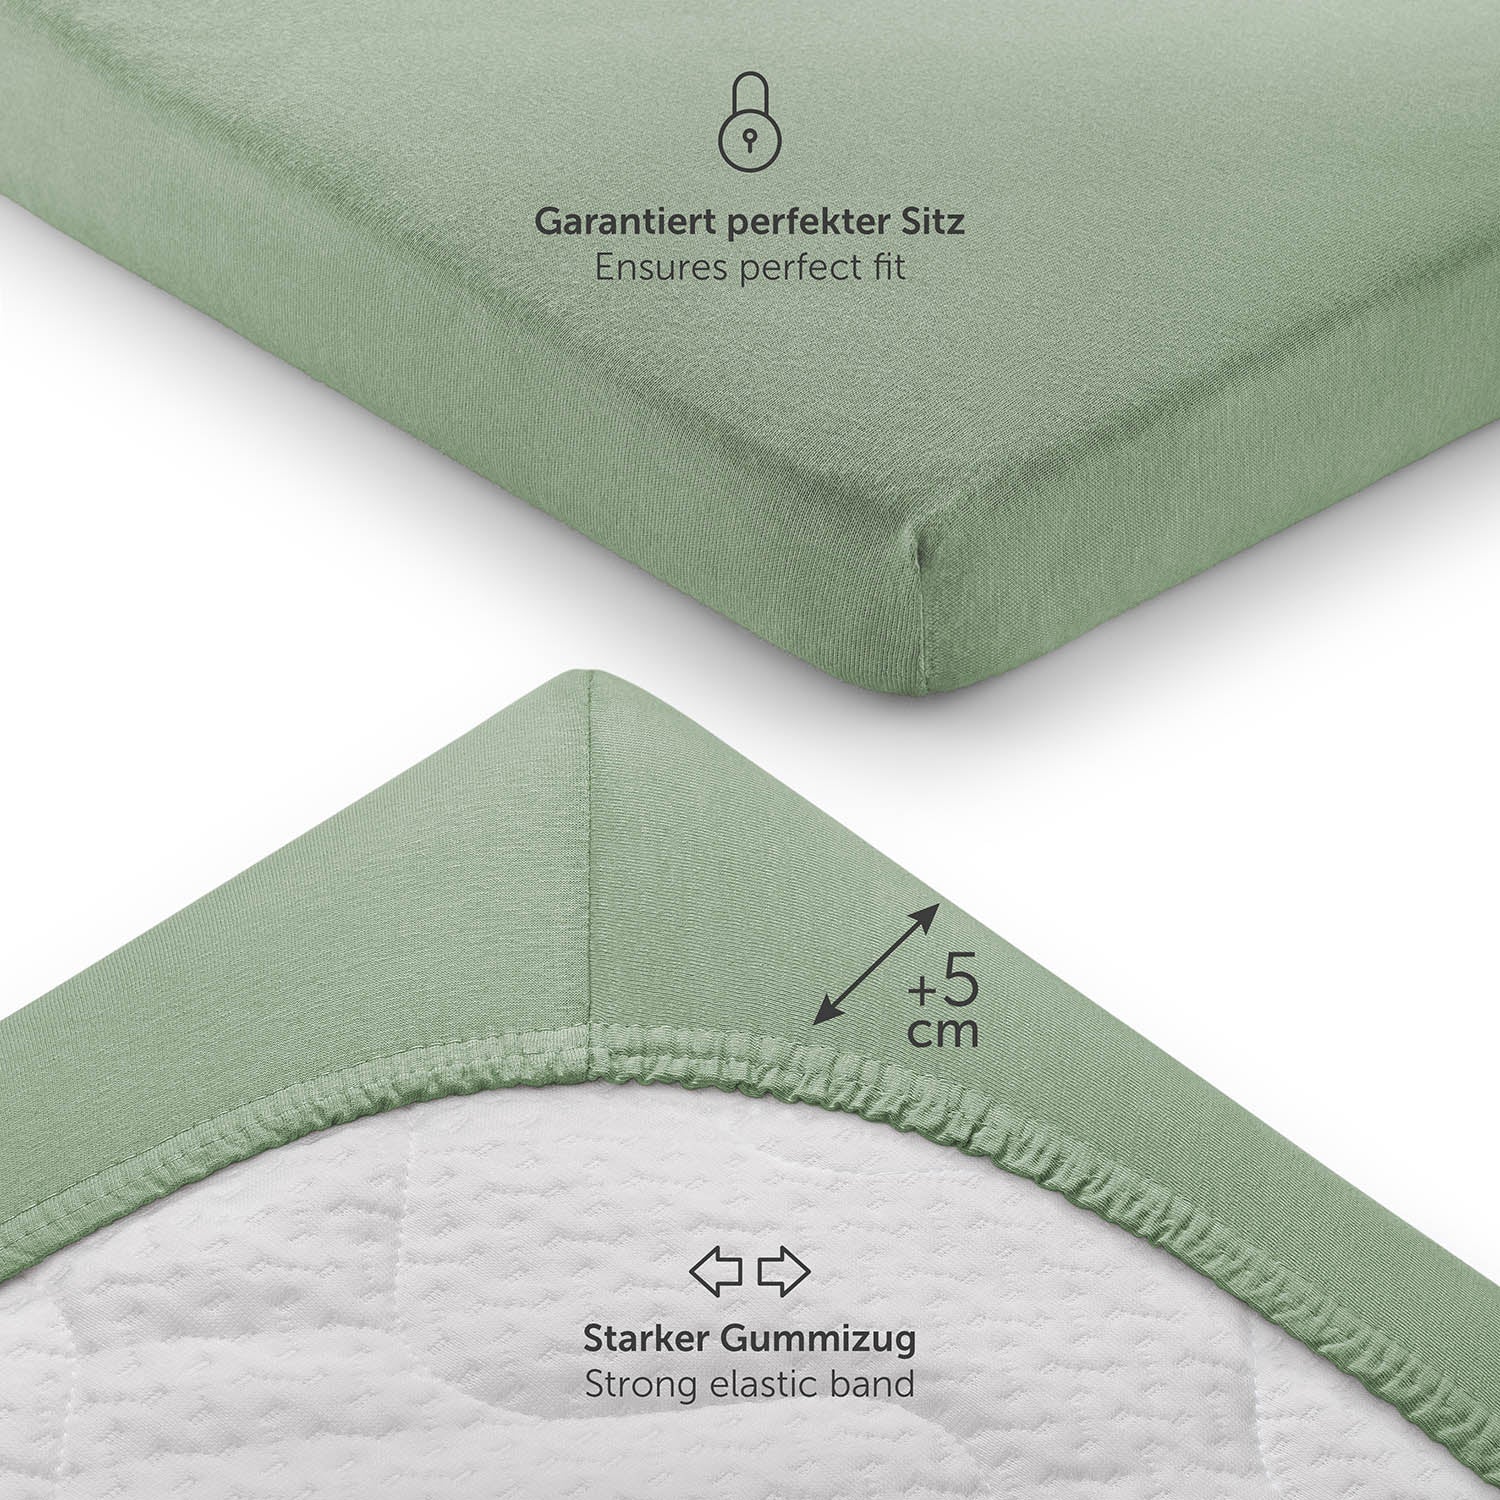 Detailansicht eines grünen Spannbettlakens das einen starken Gummizug und zusätzliche 5 cm Stoff für eine perfekte Passform zeigt.